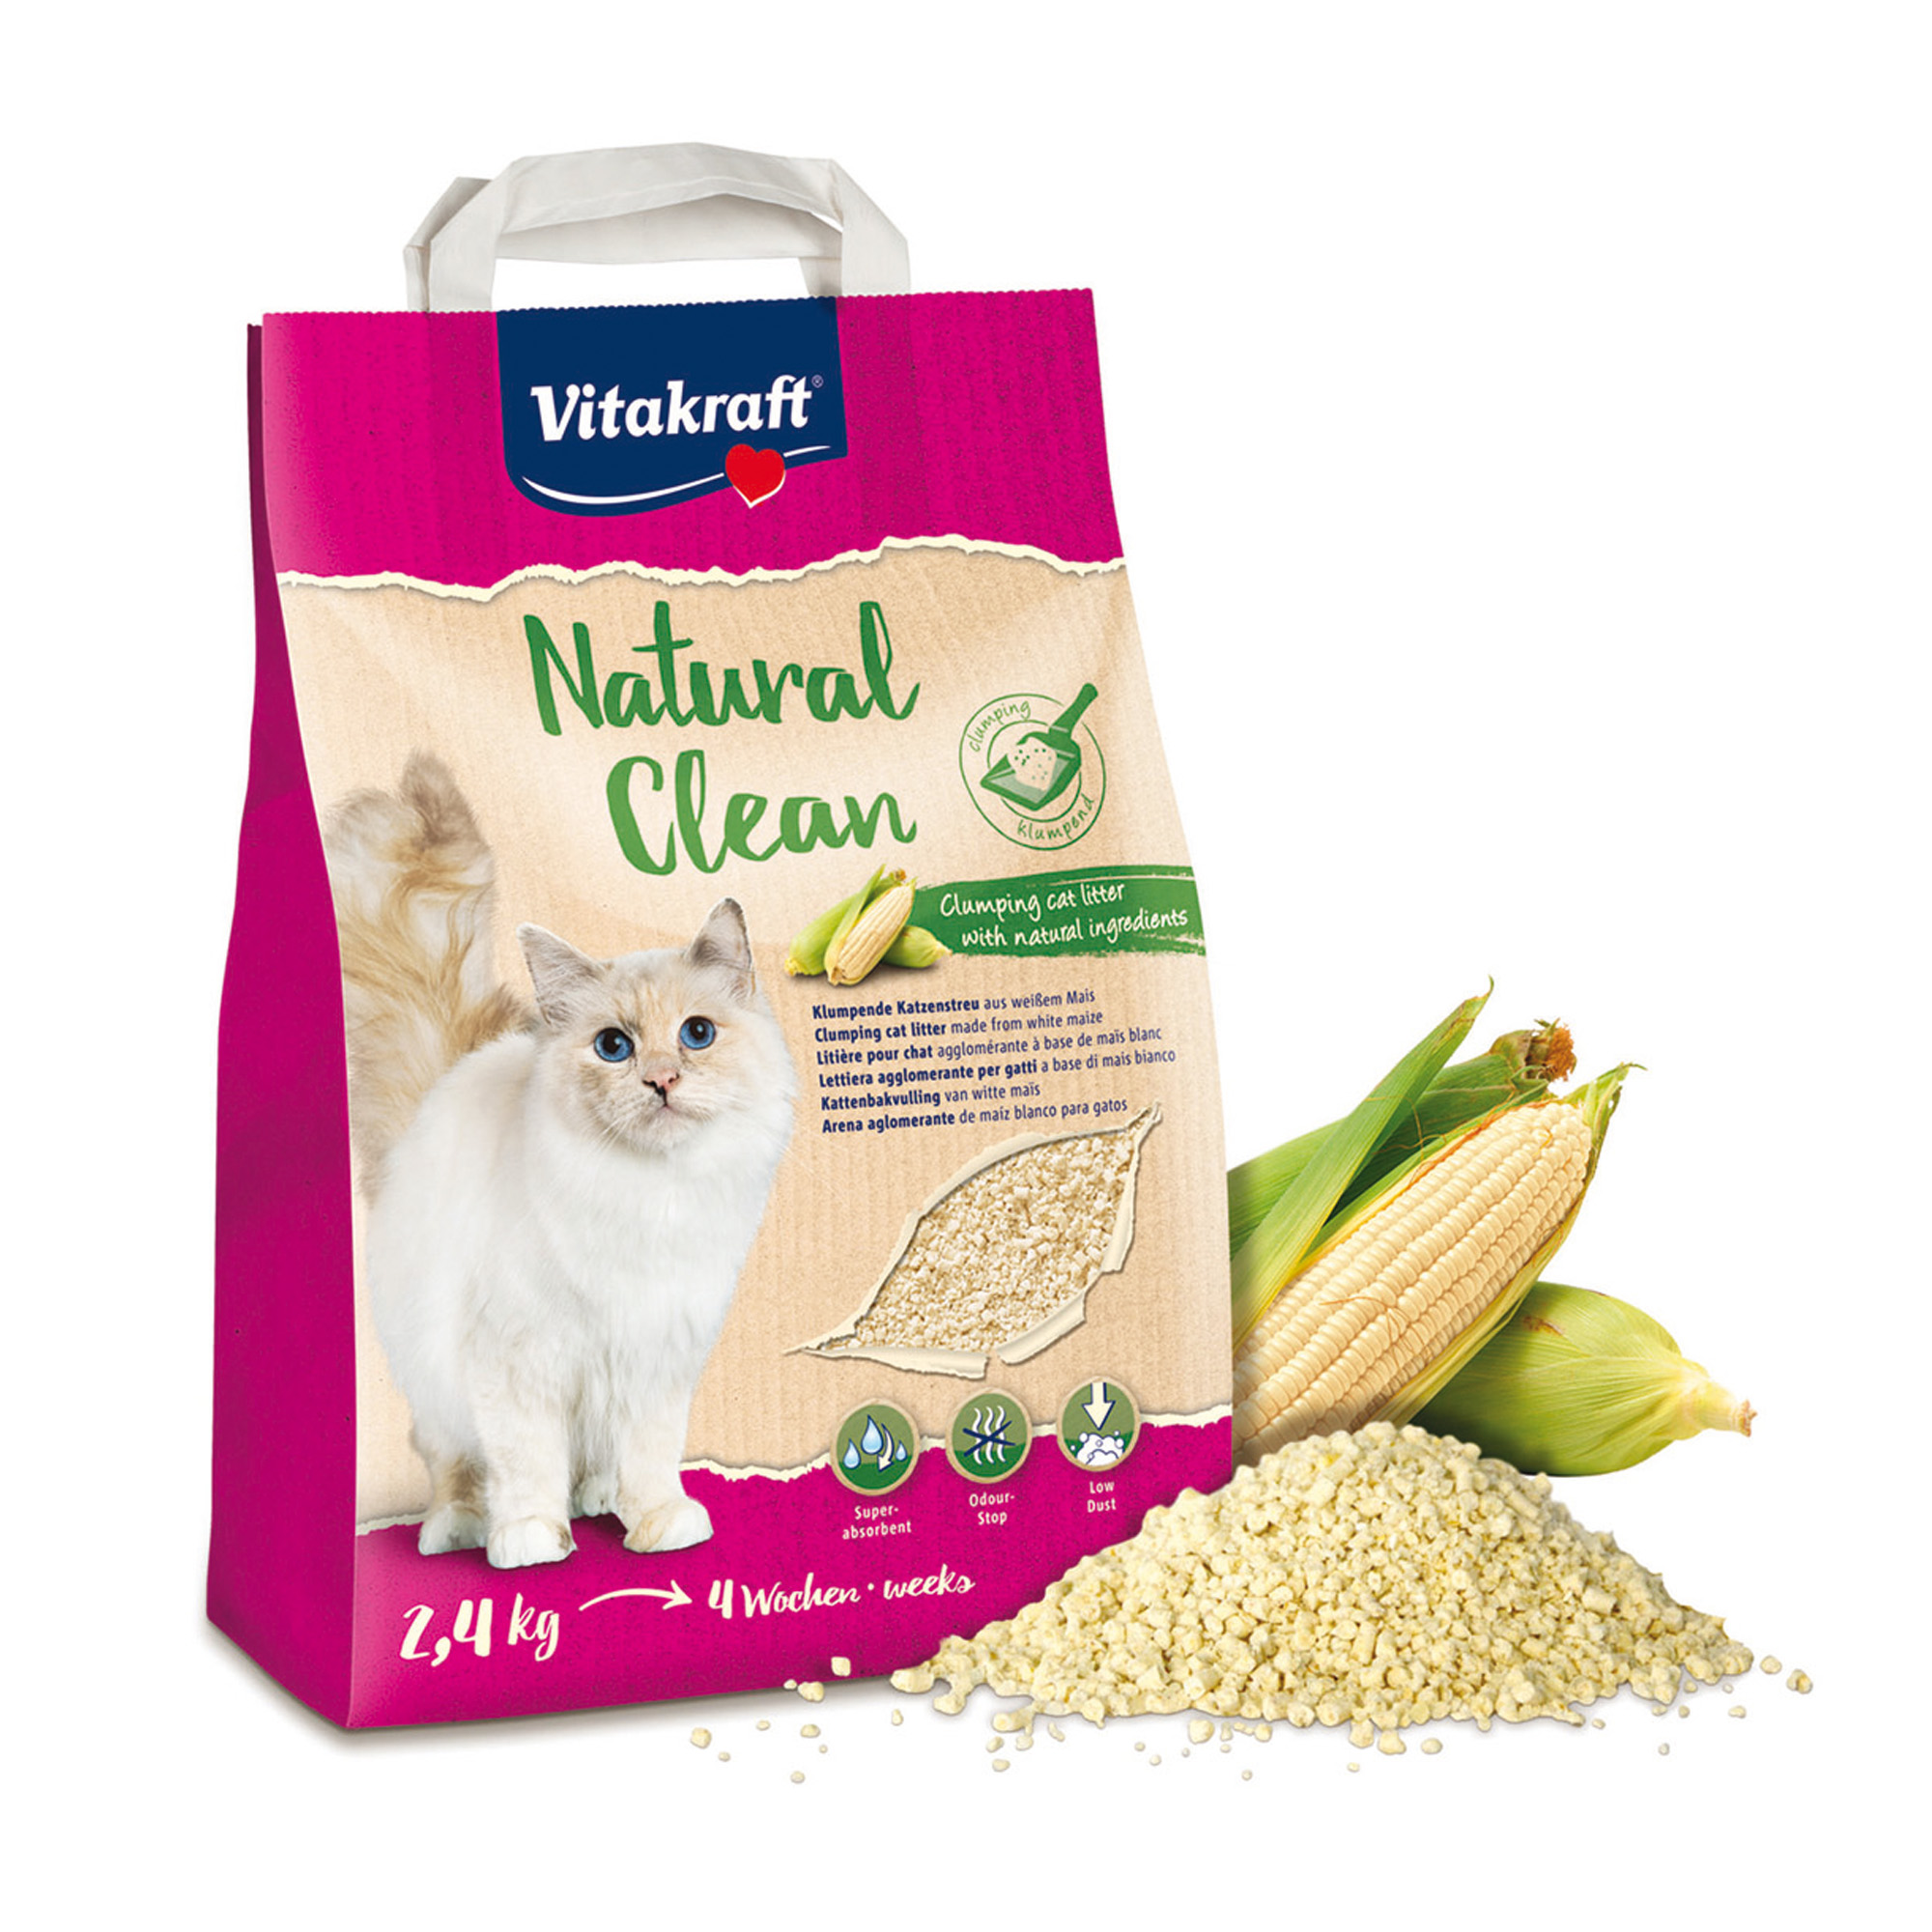 Natural Clean per lettiera al mais bianco - per gatti - formato 2,4 kg - Vitakraft